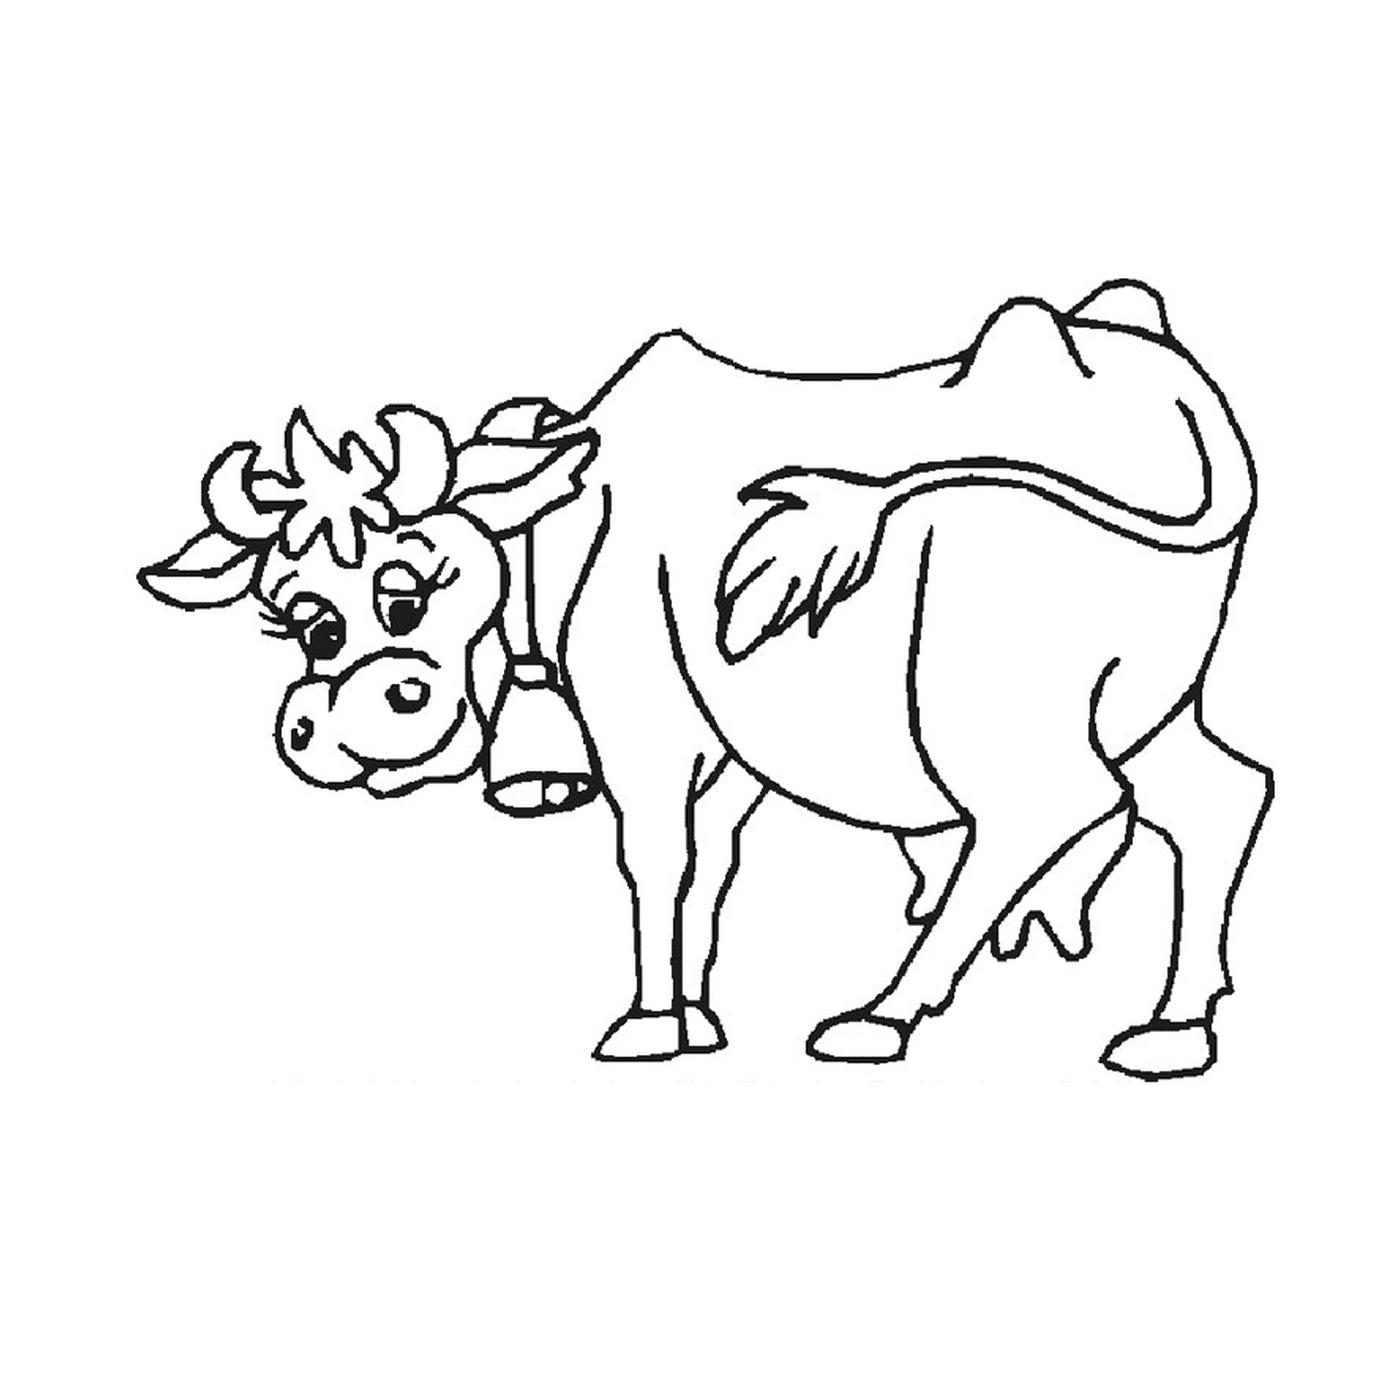  एक गाय खड़ा है 